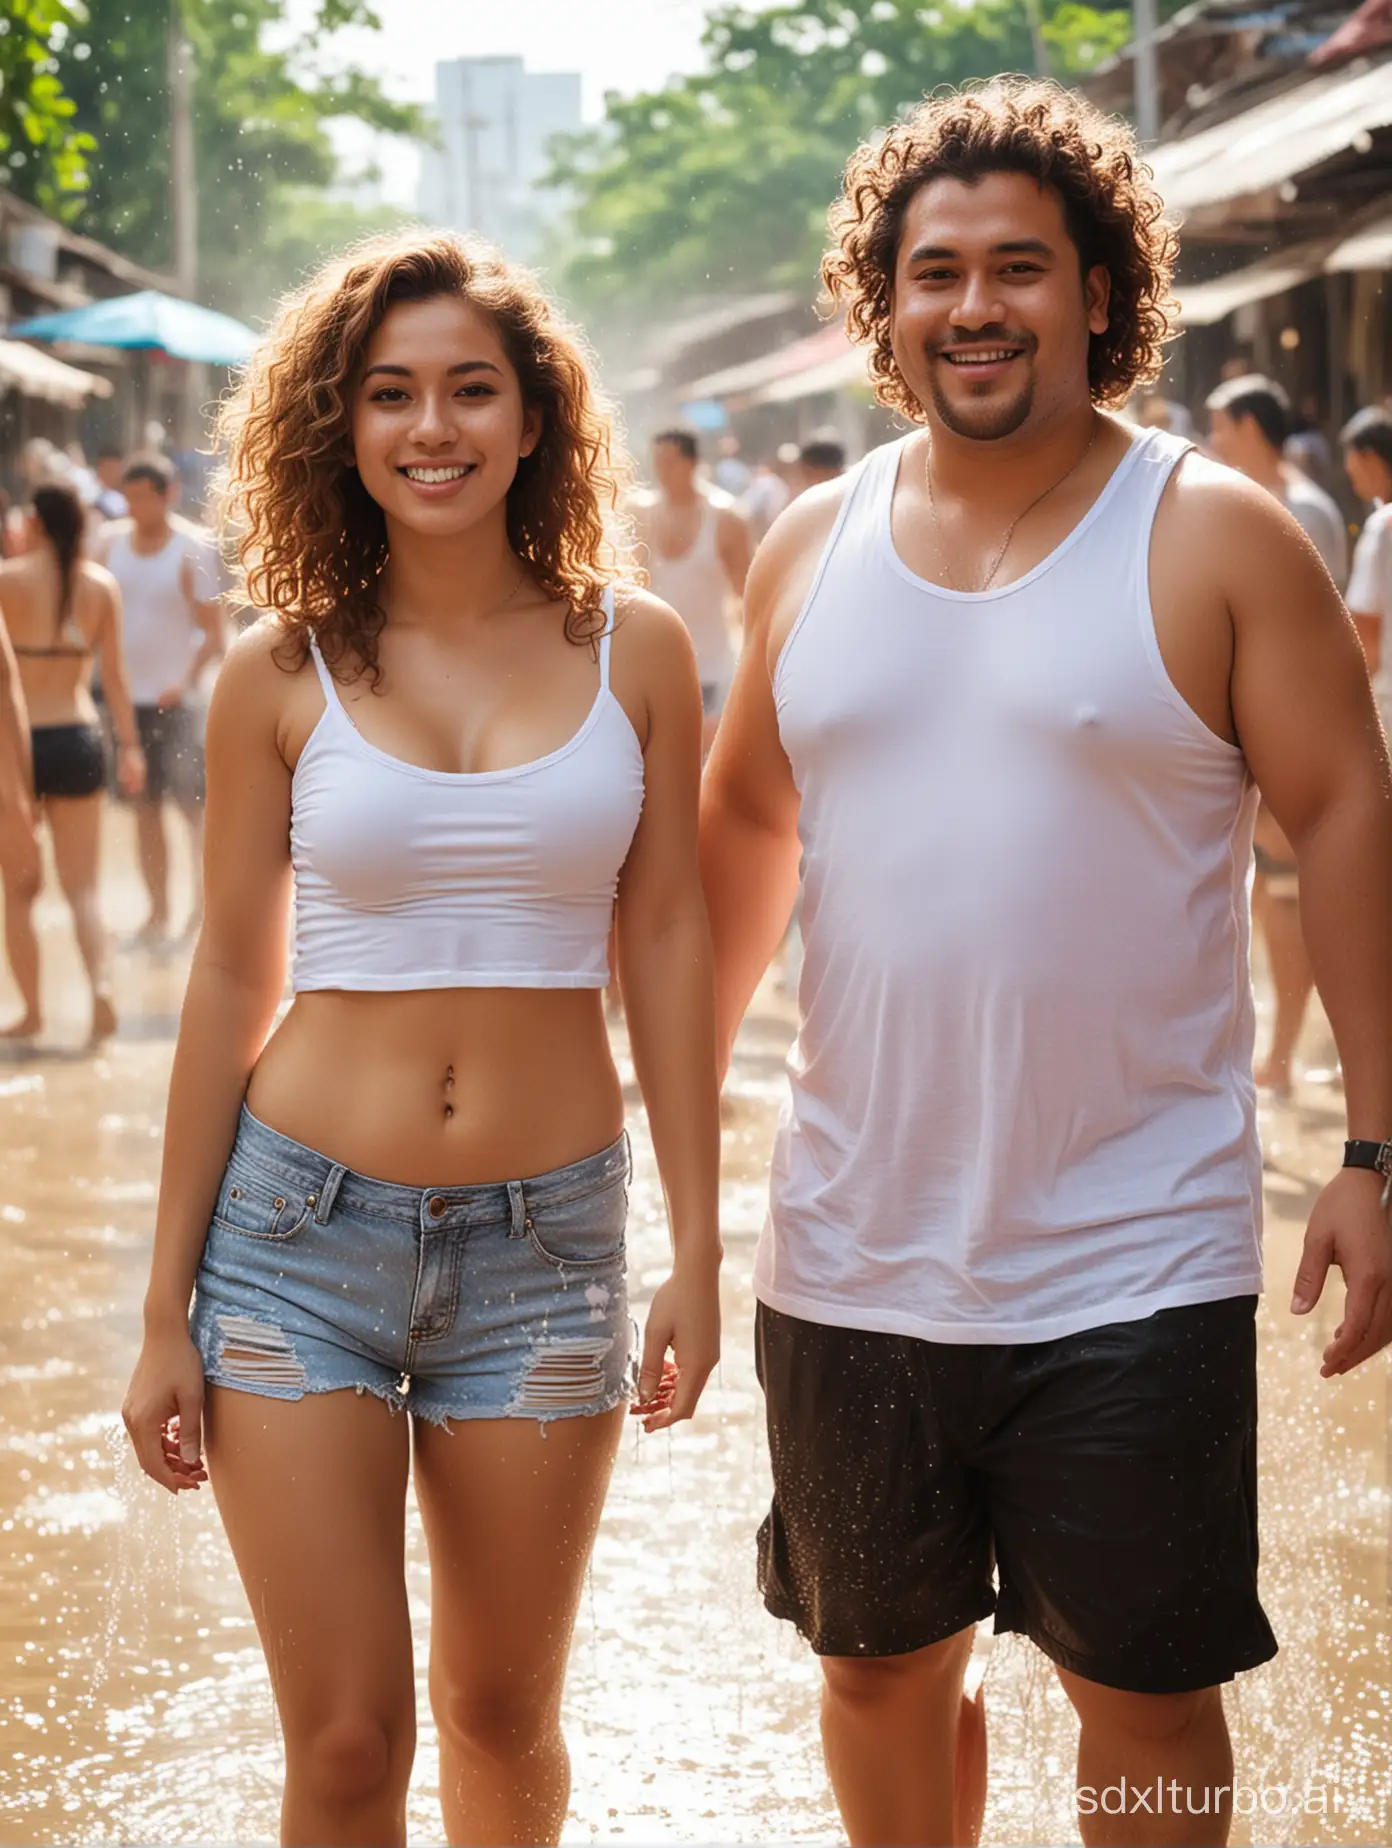 Songkran-Celebration-Couple-Splashing-Water-in-Blur